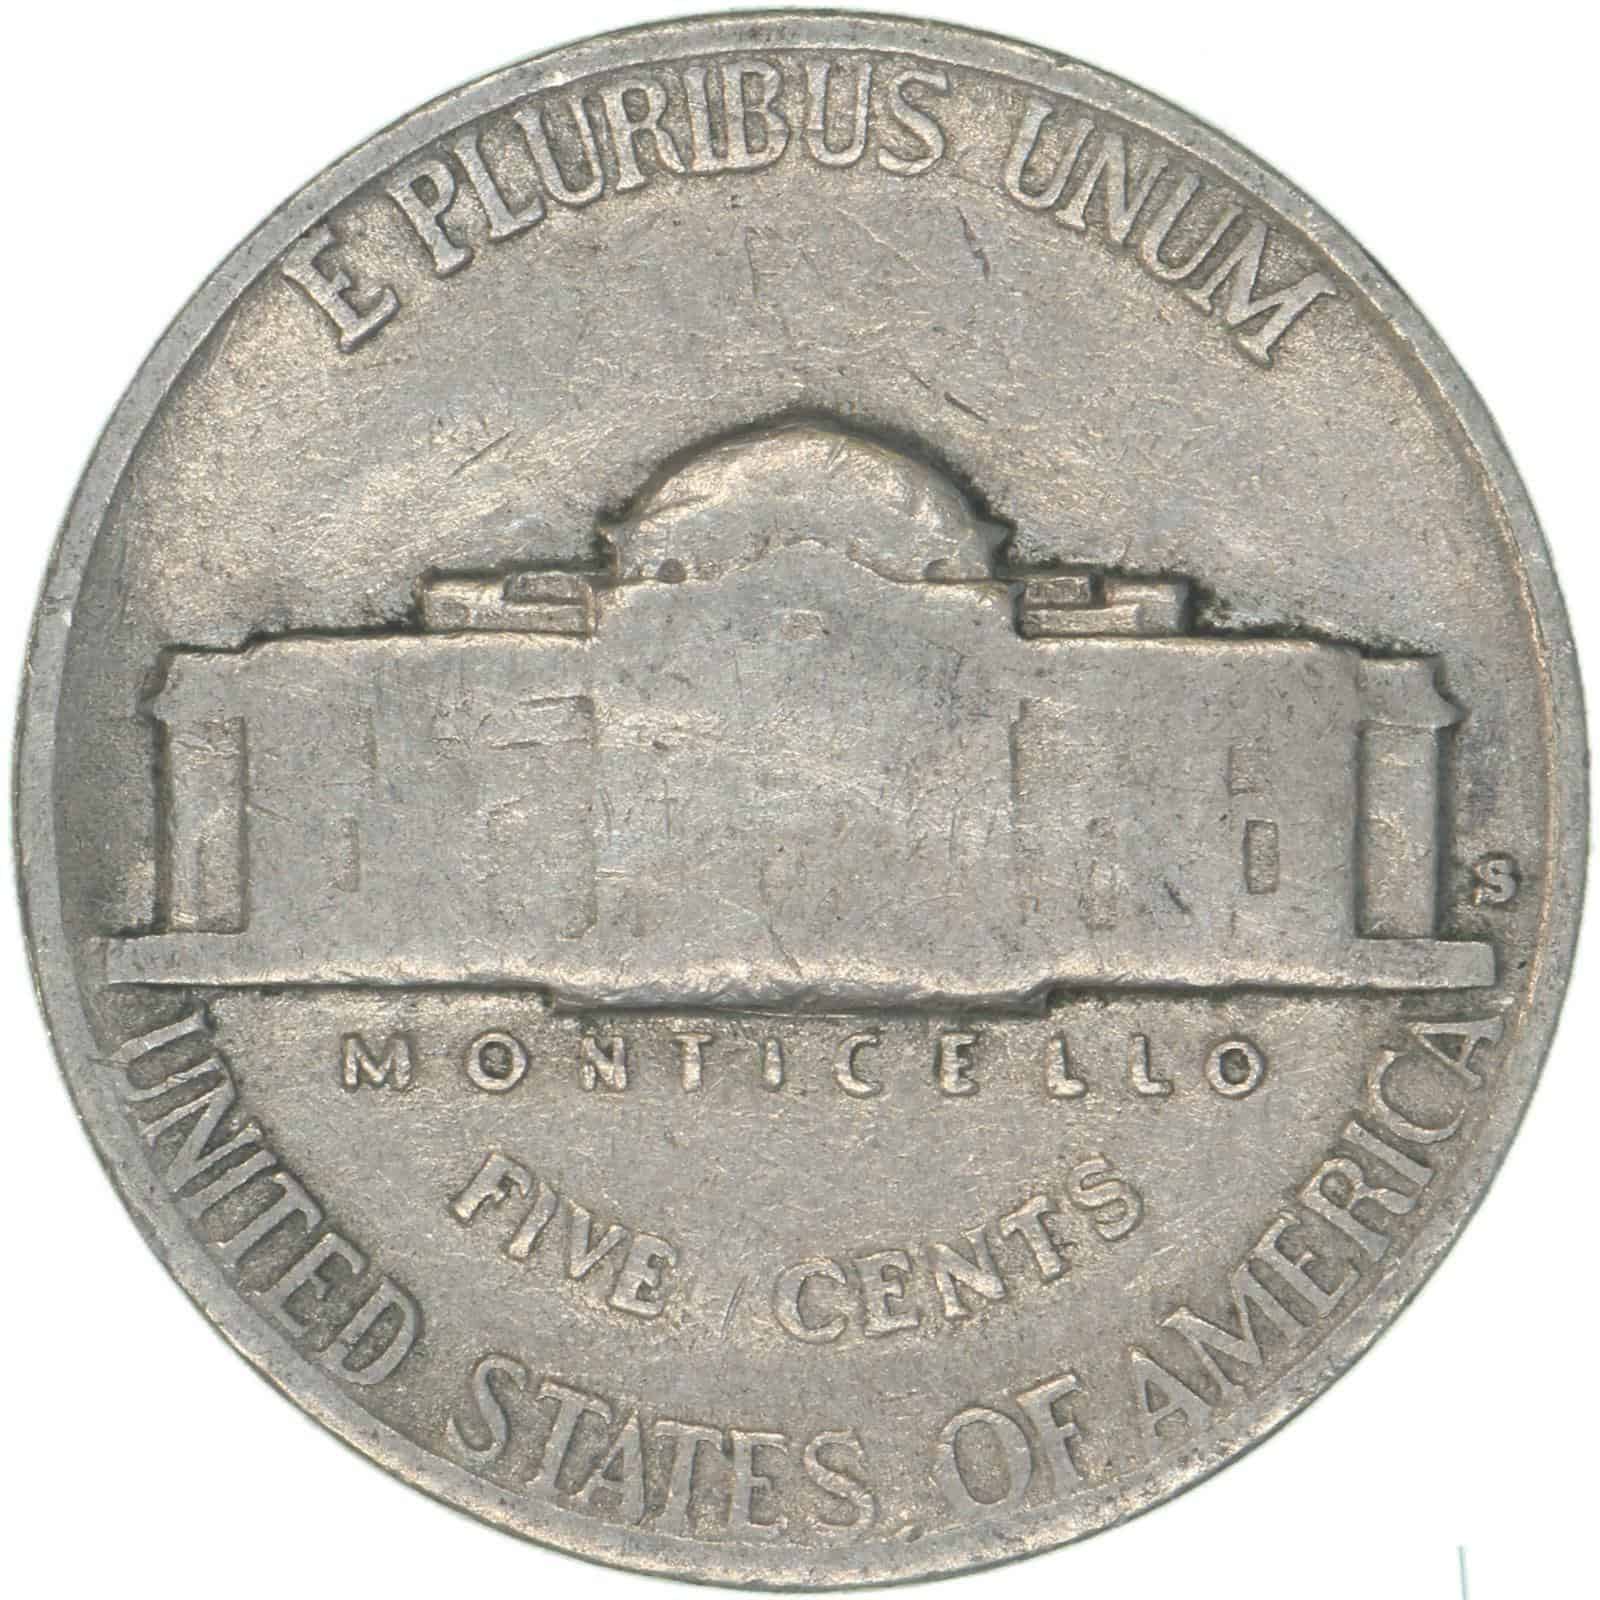 1940 San Francisco Nickel 